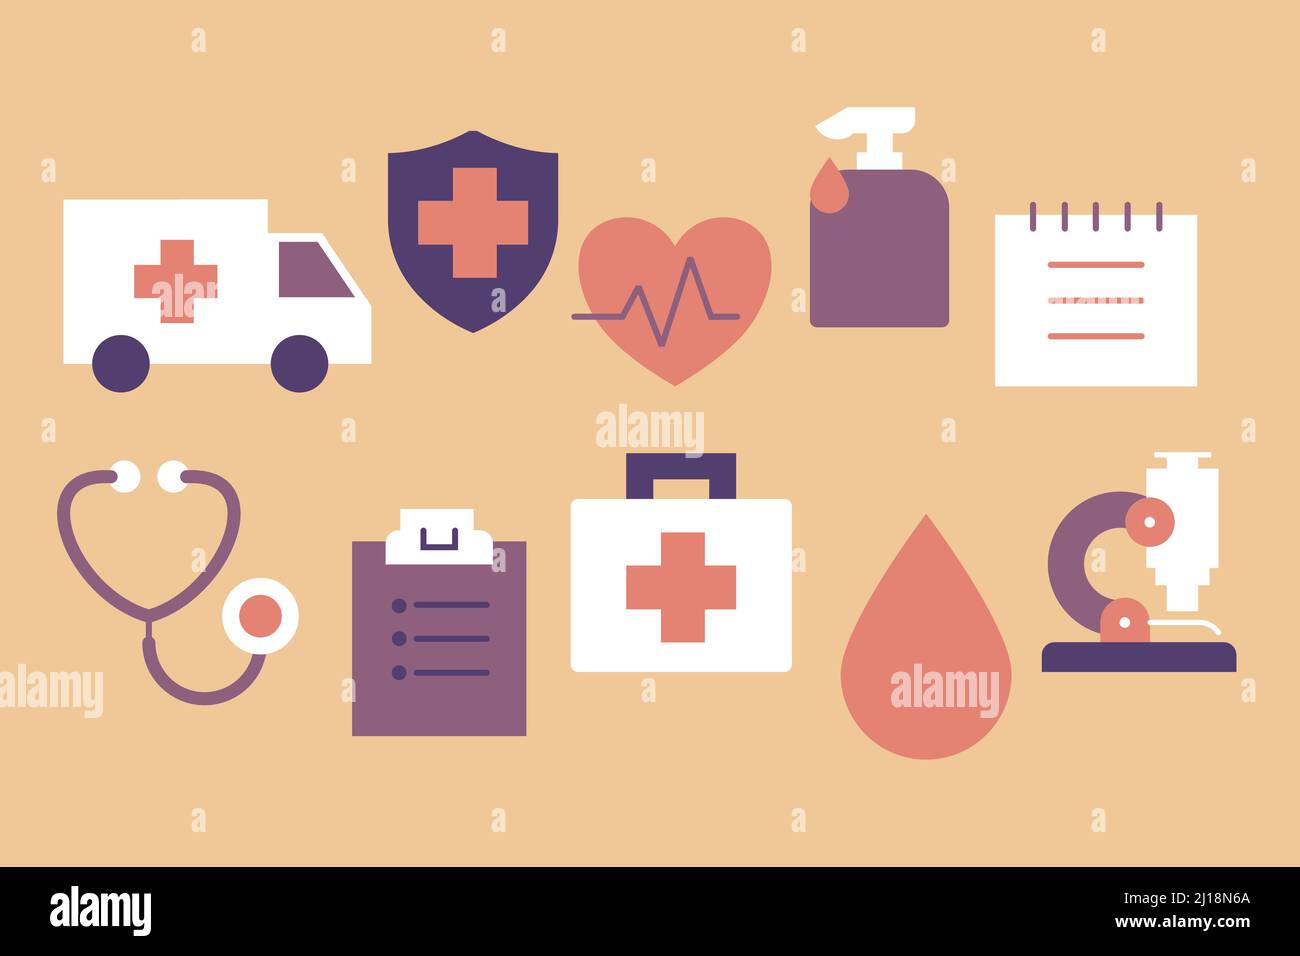 Collezione di icone mediche cartoon a colori. Set di icone di medicina sanitaria: Ambulanza, scudo, cuore, polso, disinfettante, cartella clinica, stetoscopio. Illustrazione Vettoriale